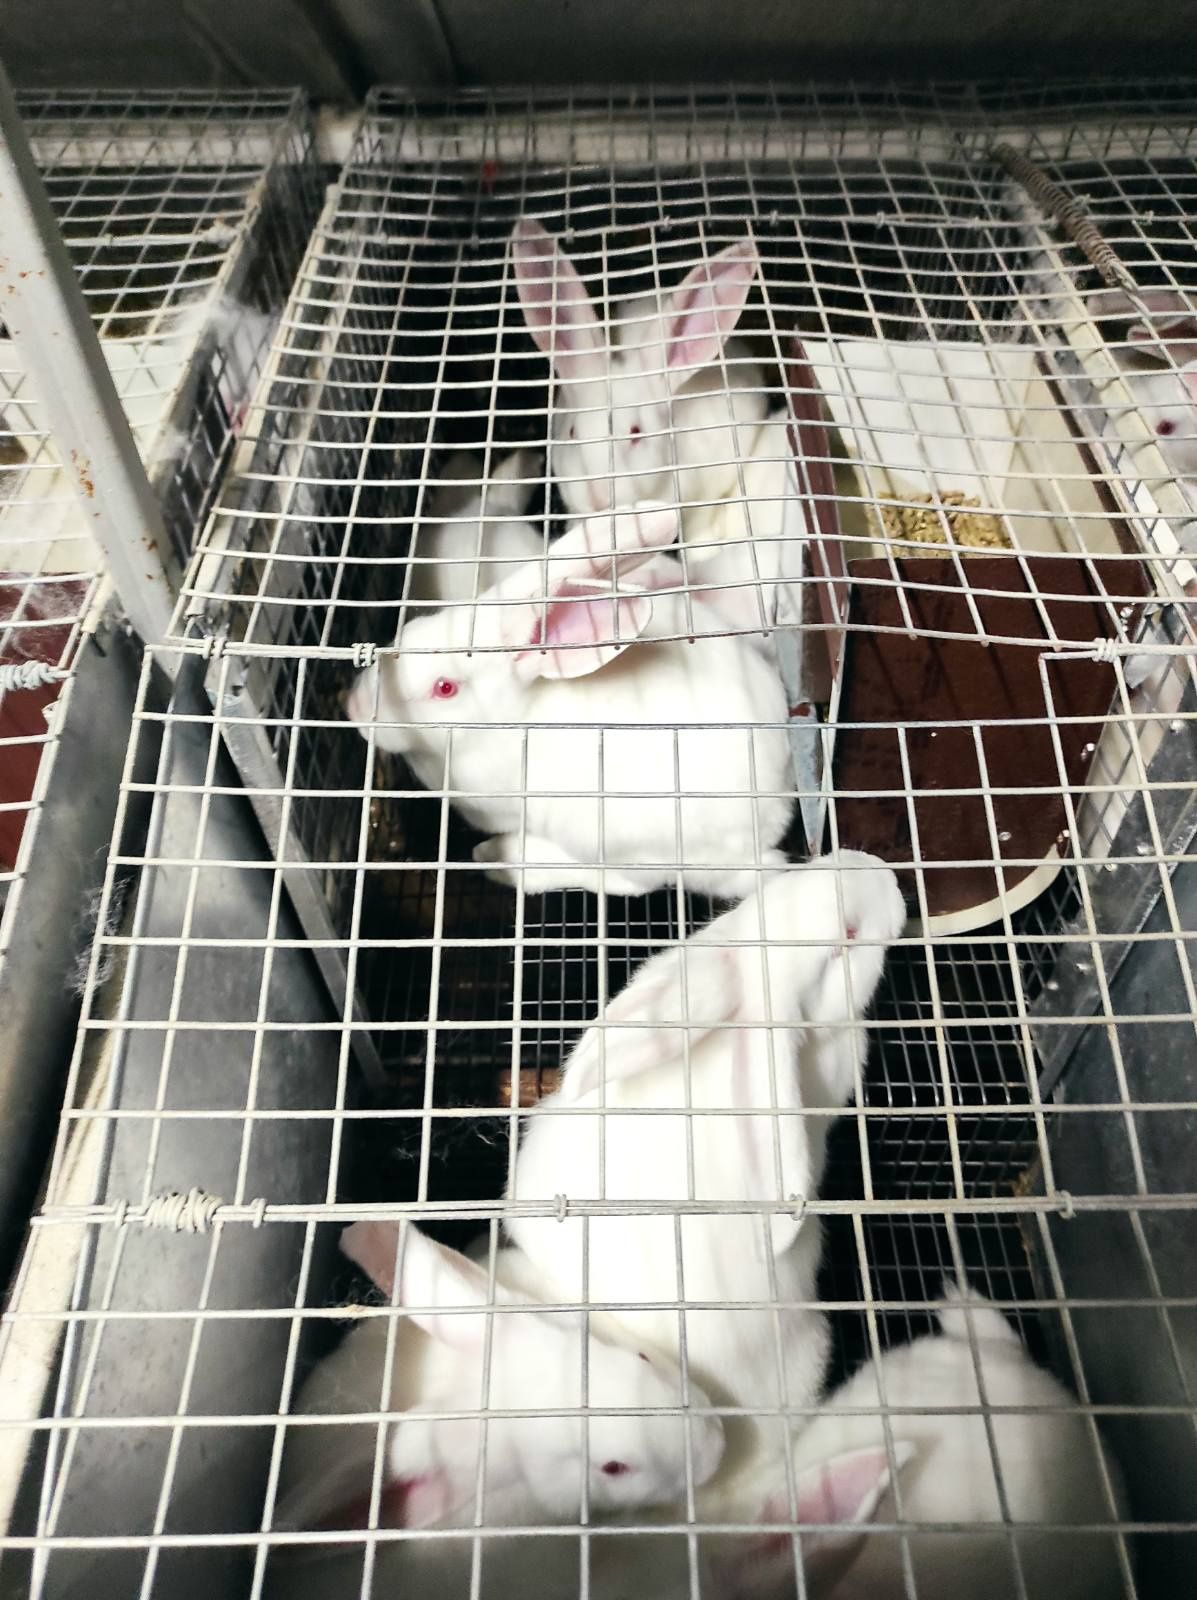 Продам молодняк кроликов термонский белый